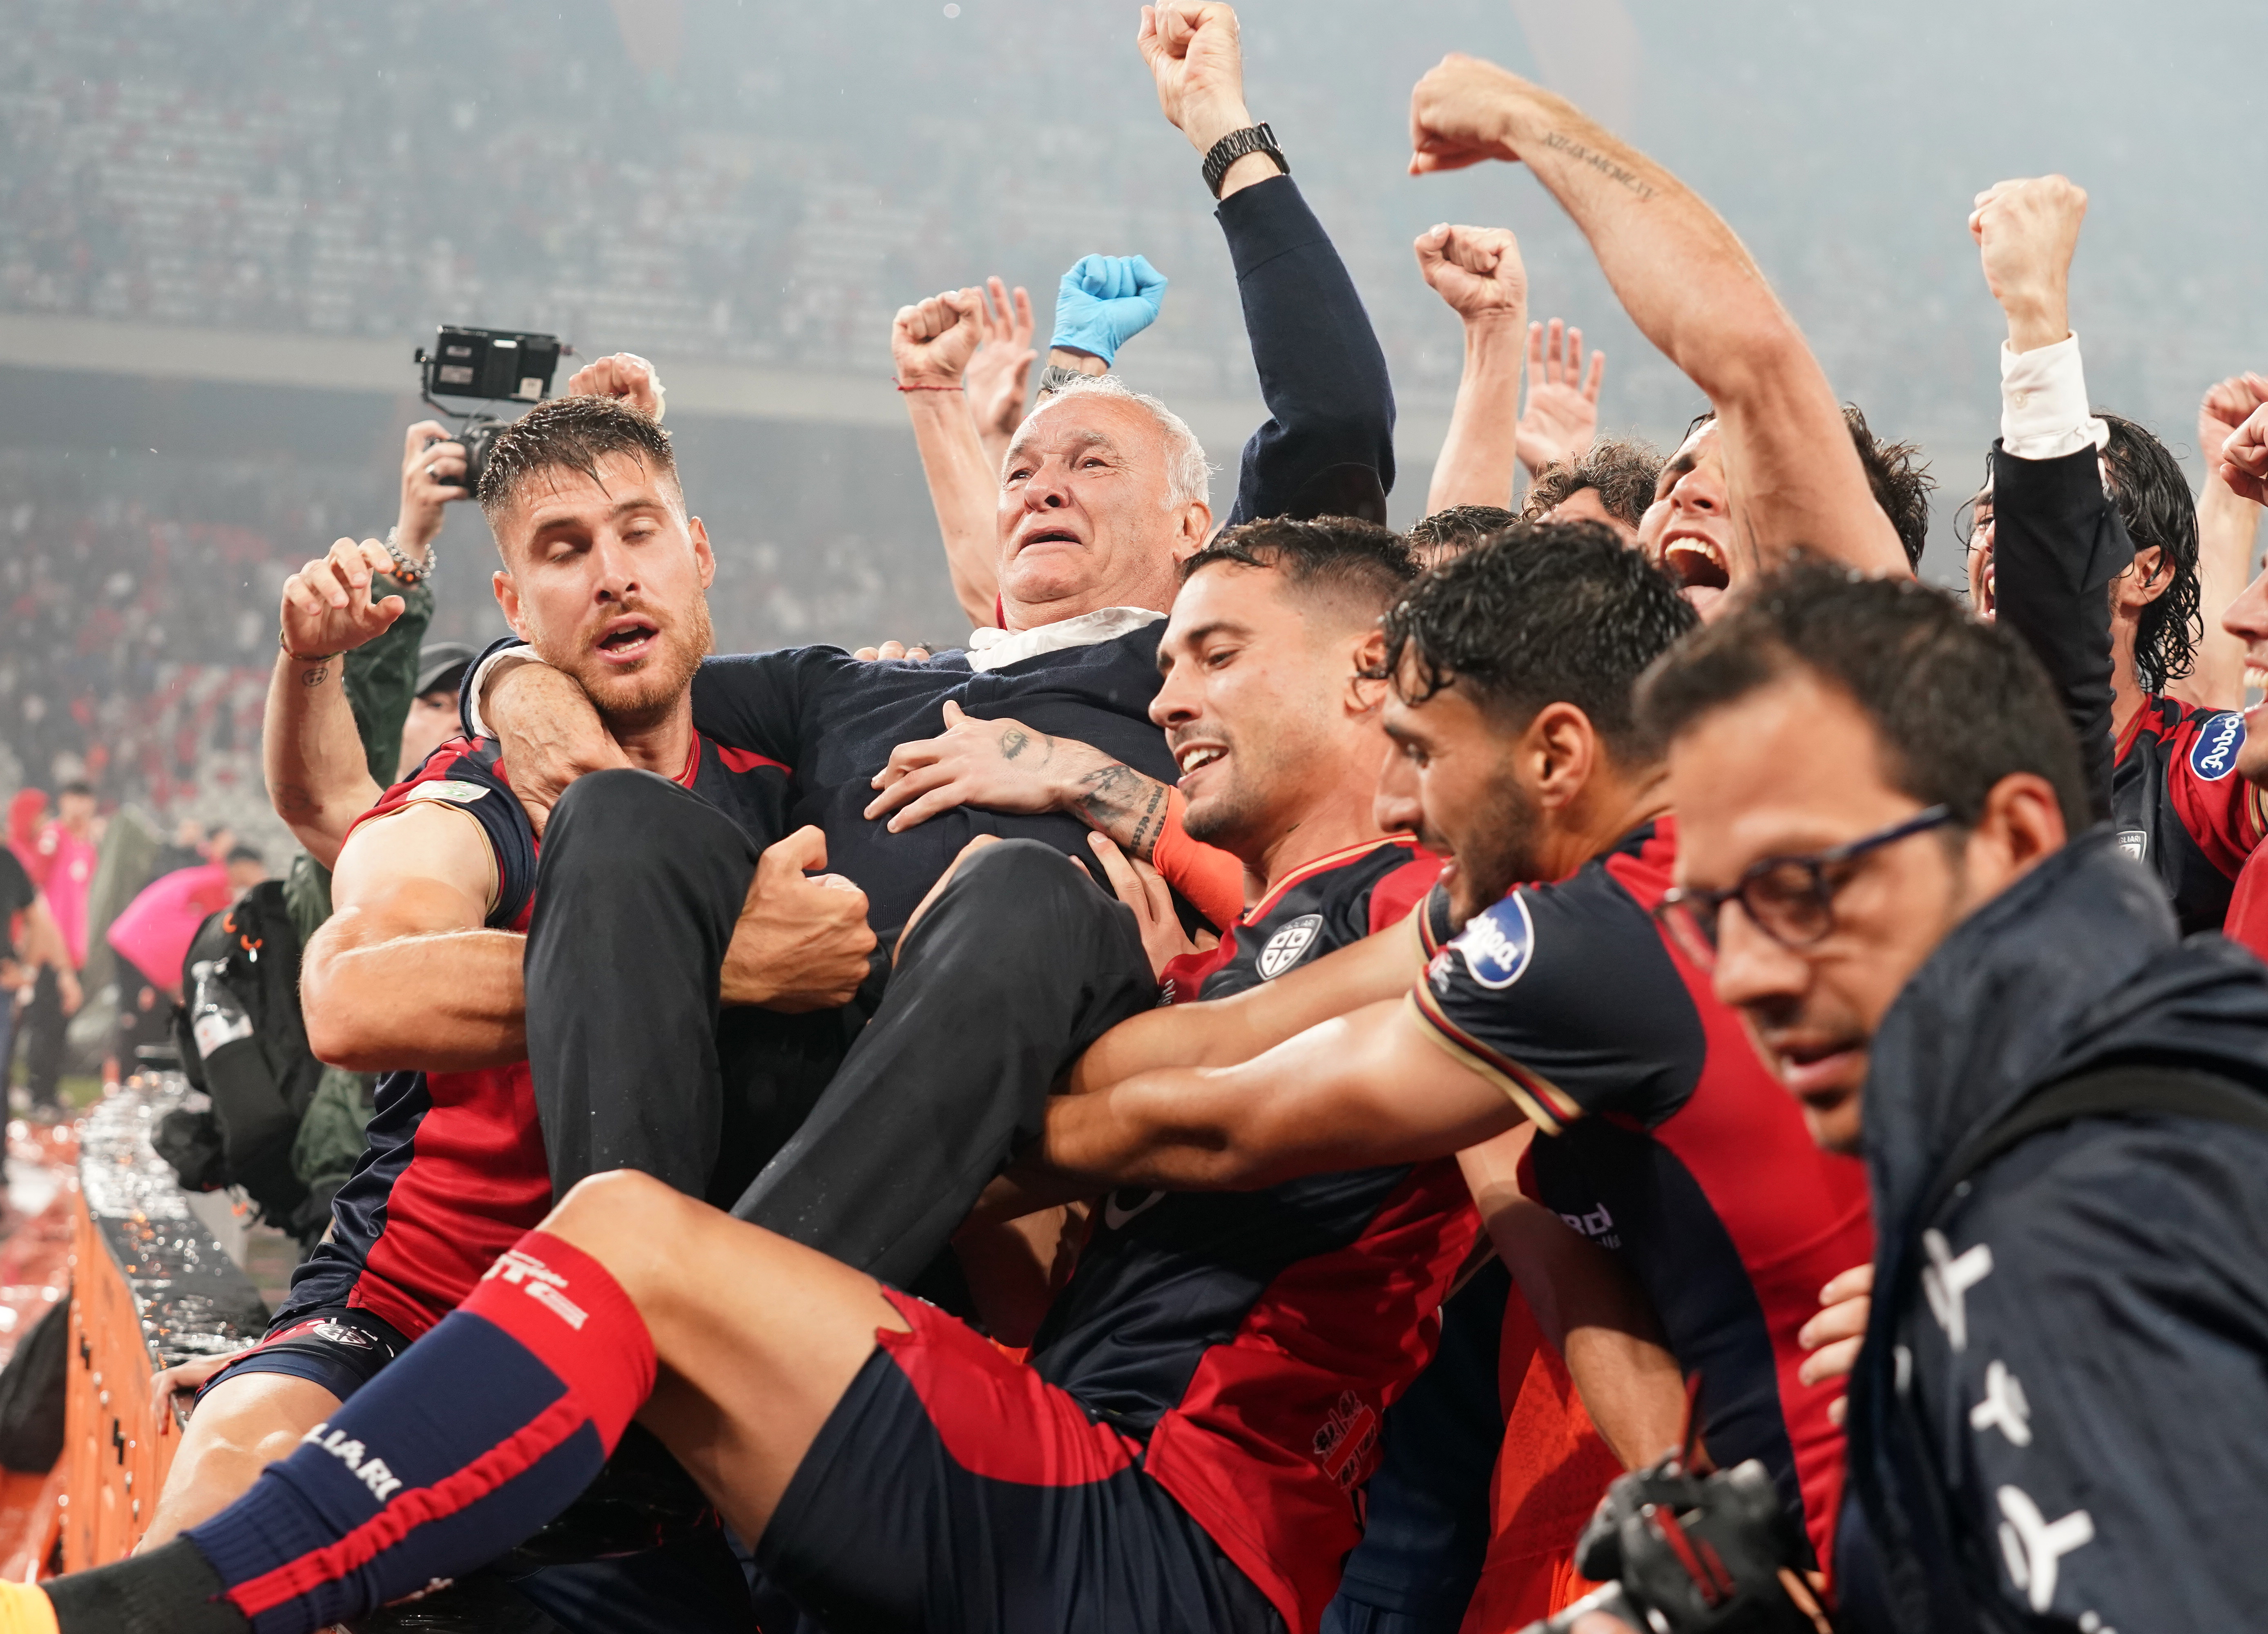 Genoa CFC » Squad 2023/2024